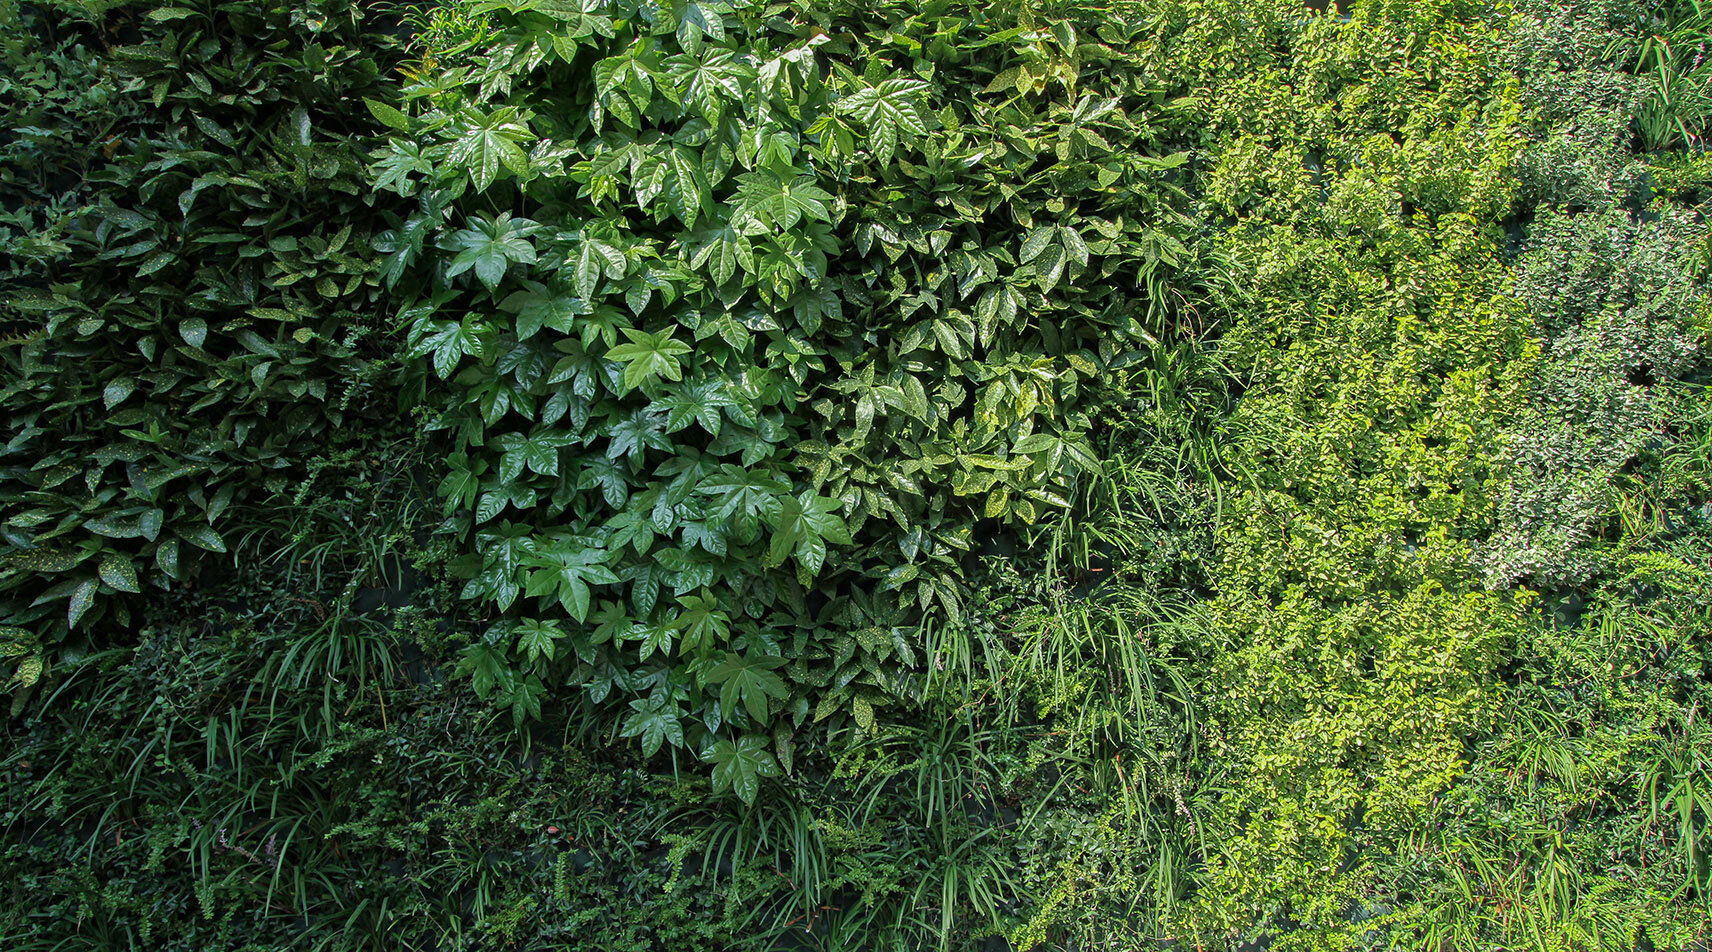 jolanda-garten-vertikale-wand-grün-sundar-italia-006.jpg